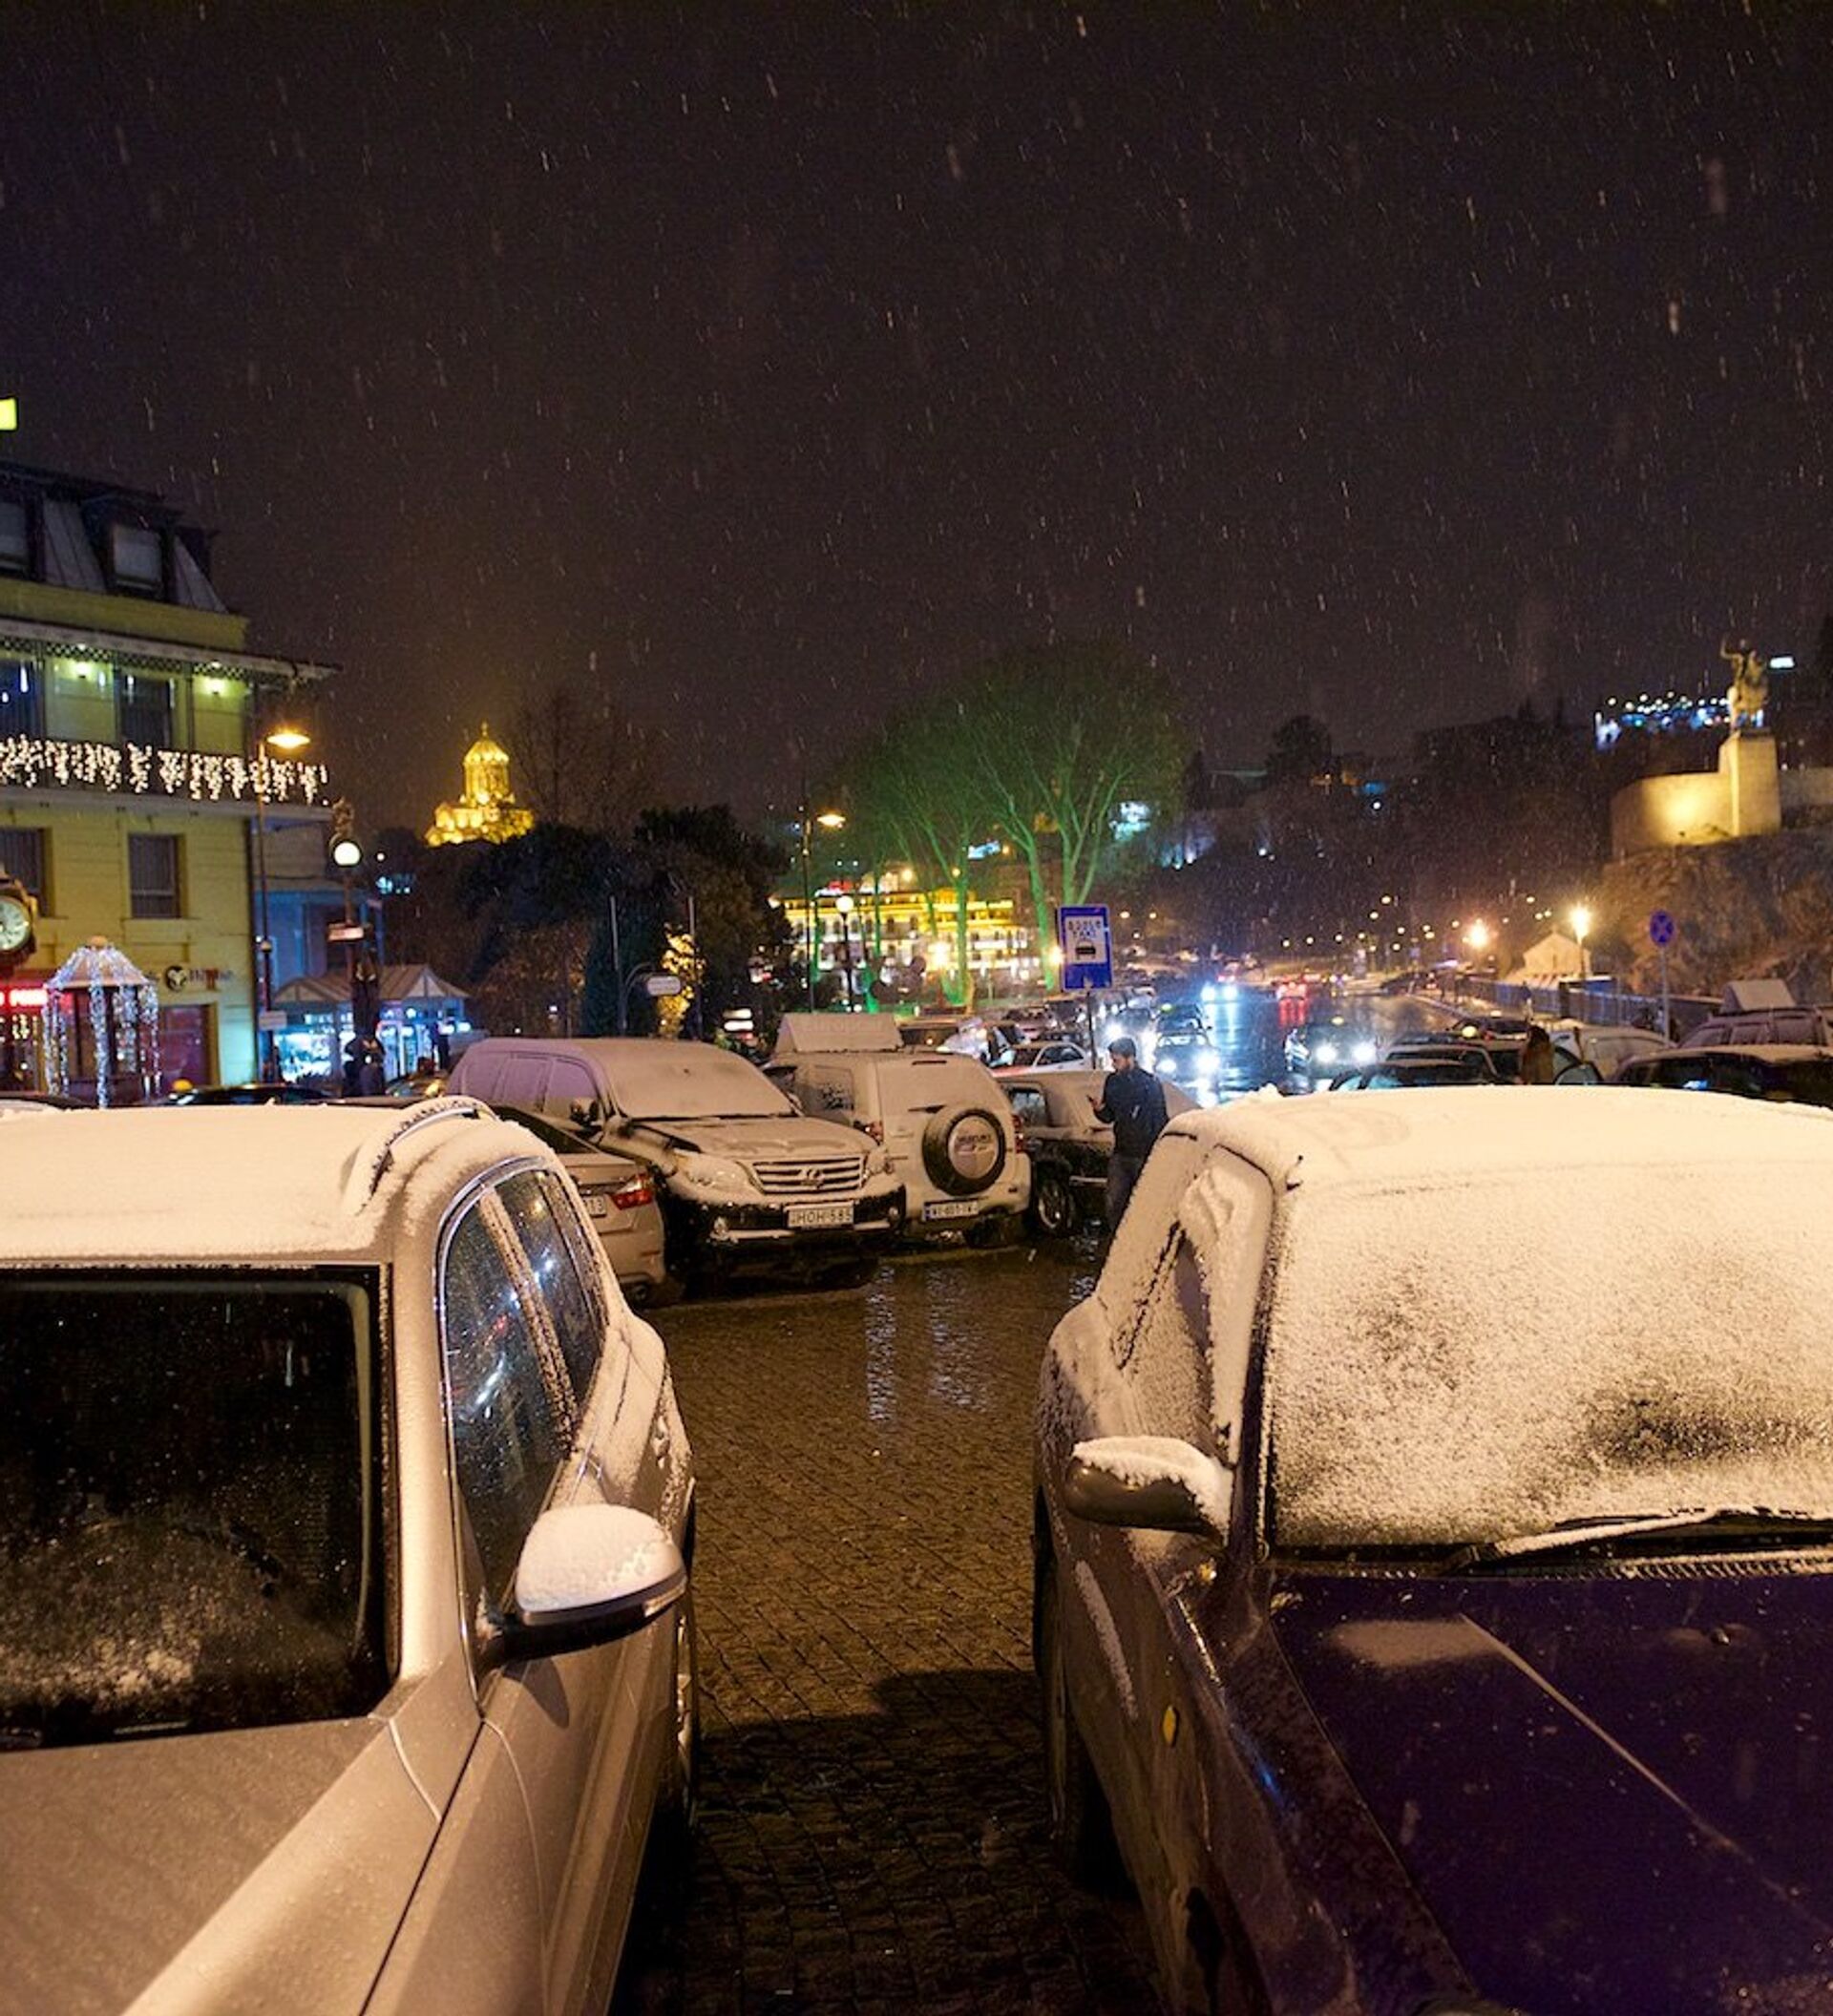 Погода в тбилисской сегодня. Снег в Тбилиси сегодня. Авария 7 декабря в Тбилиси 2014. Снег в Тбилиси когда выпадает. Прогноз погоды в Тбилиси.